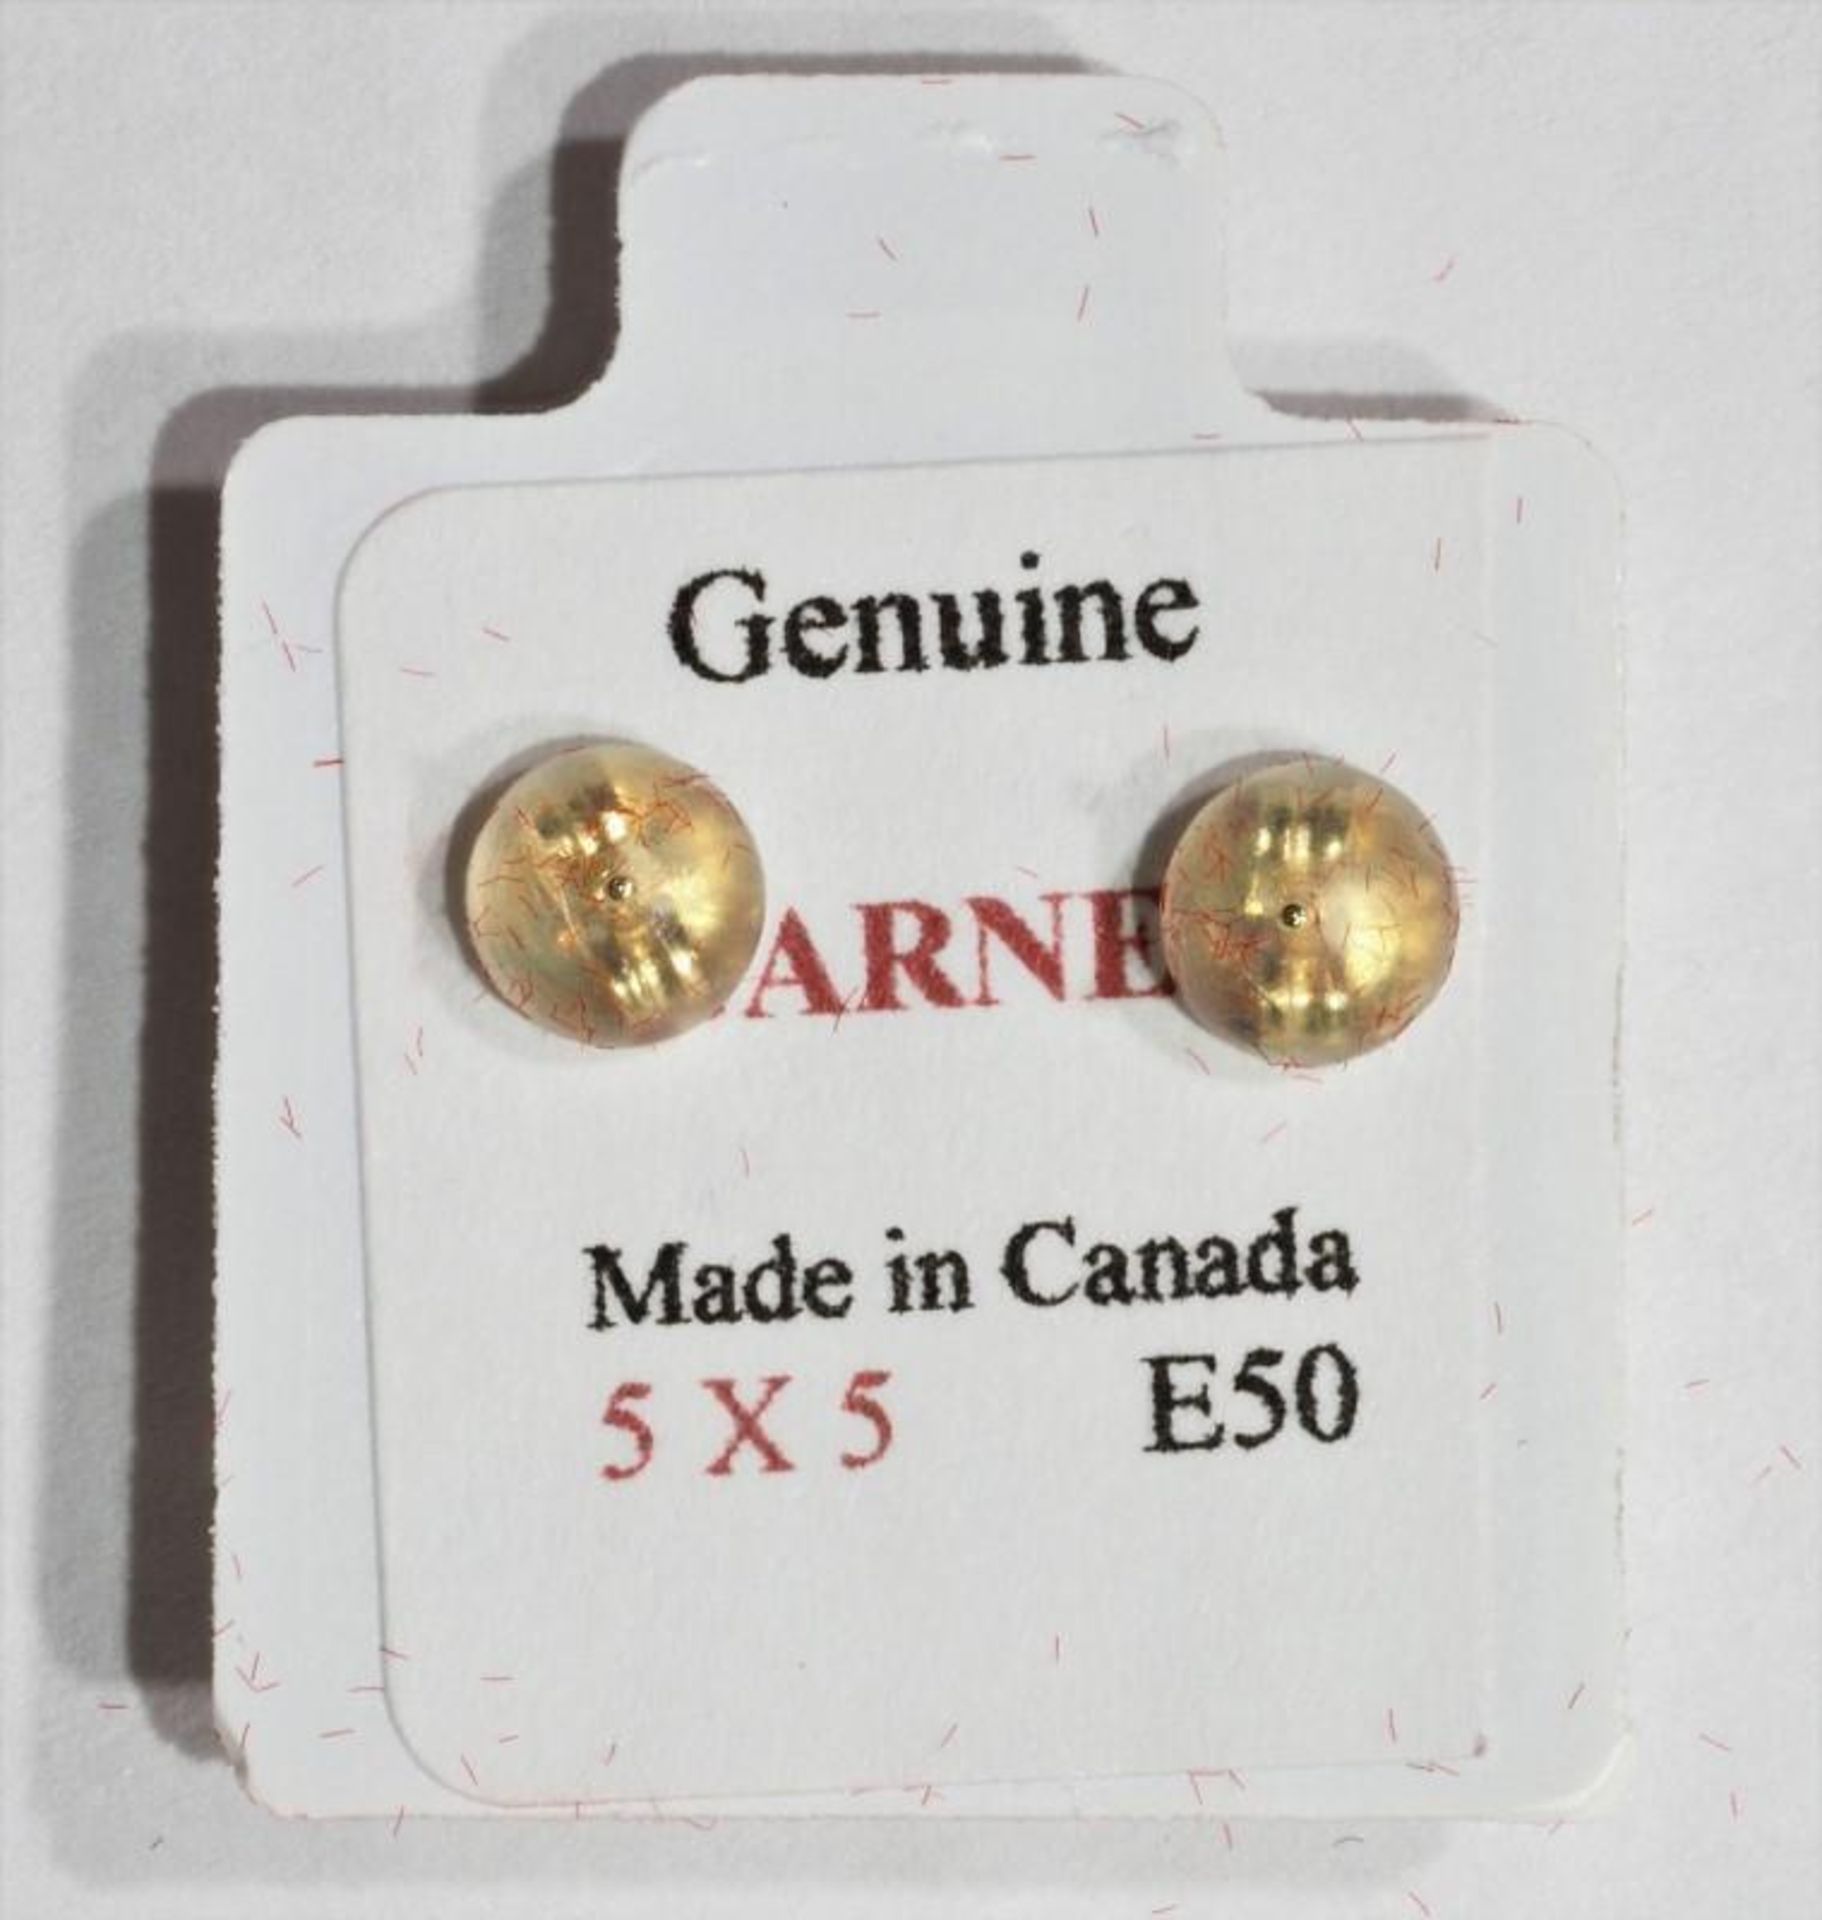 10K Gold Heart Shaped Garnet Earrings, Retail $240 (MS19 - 42) - Image 3 of 3